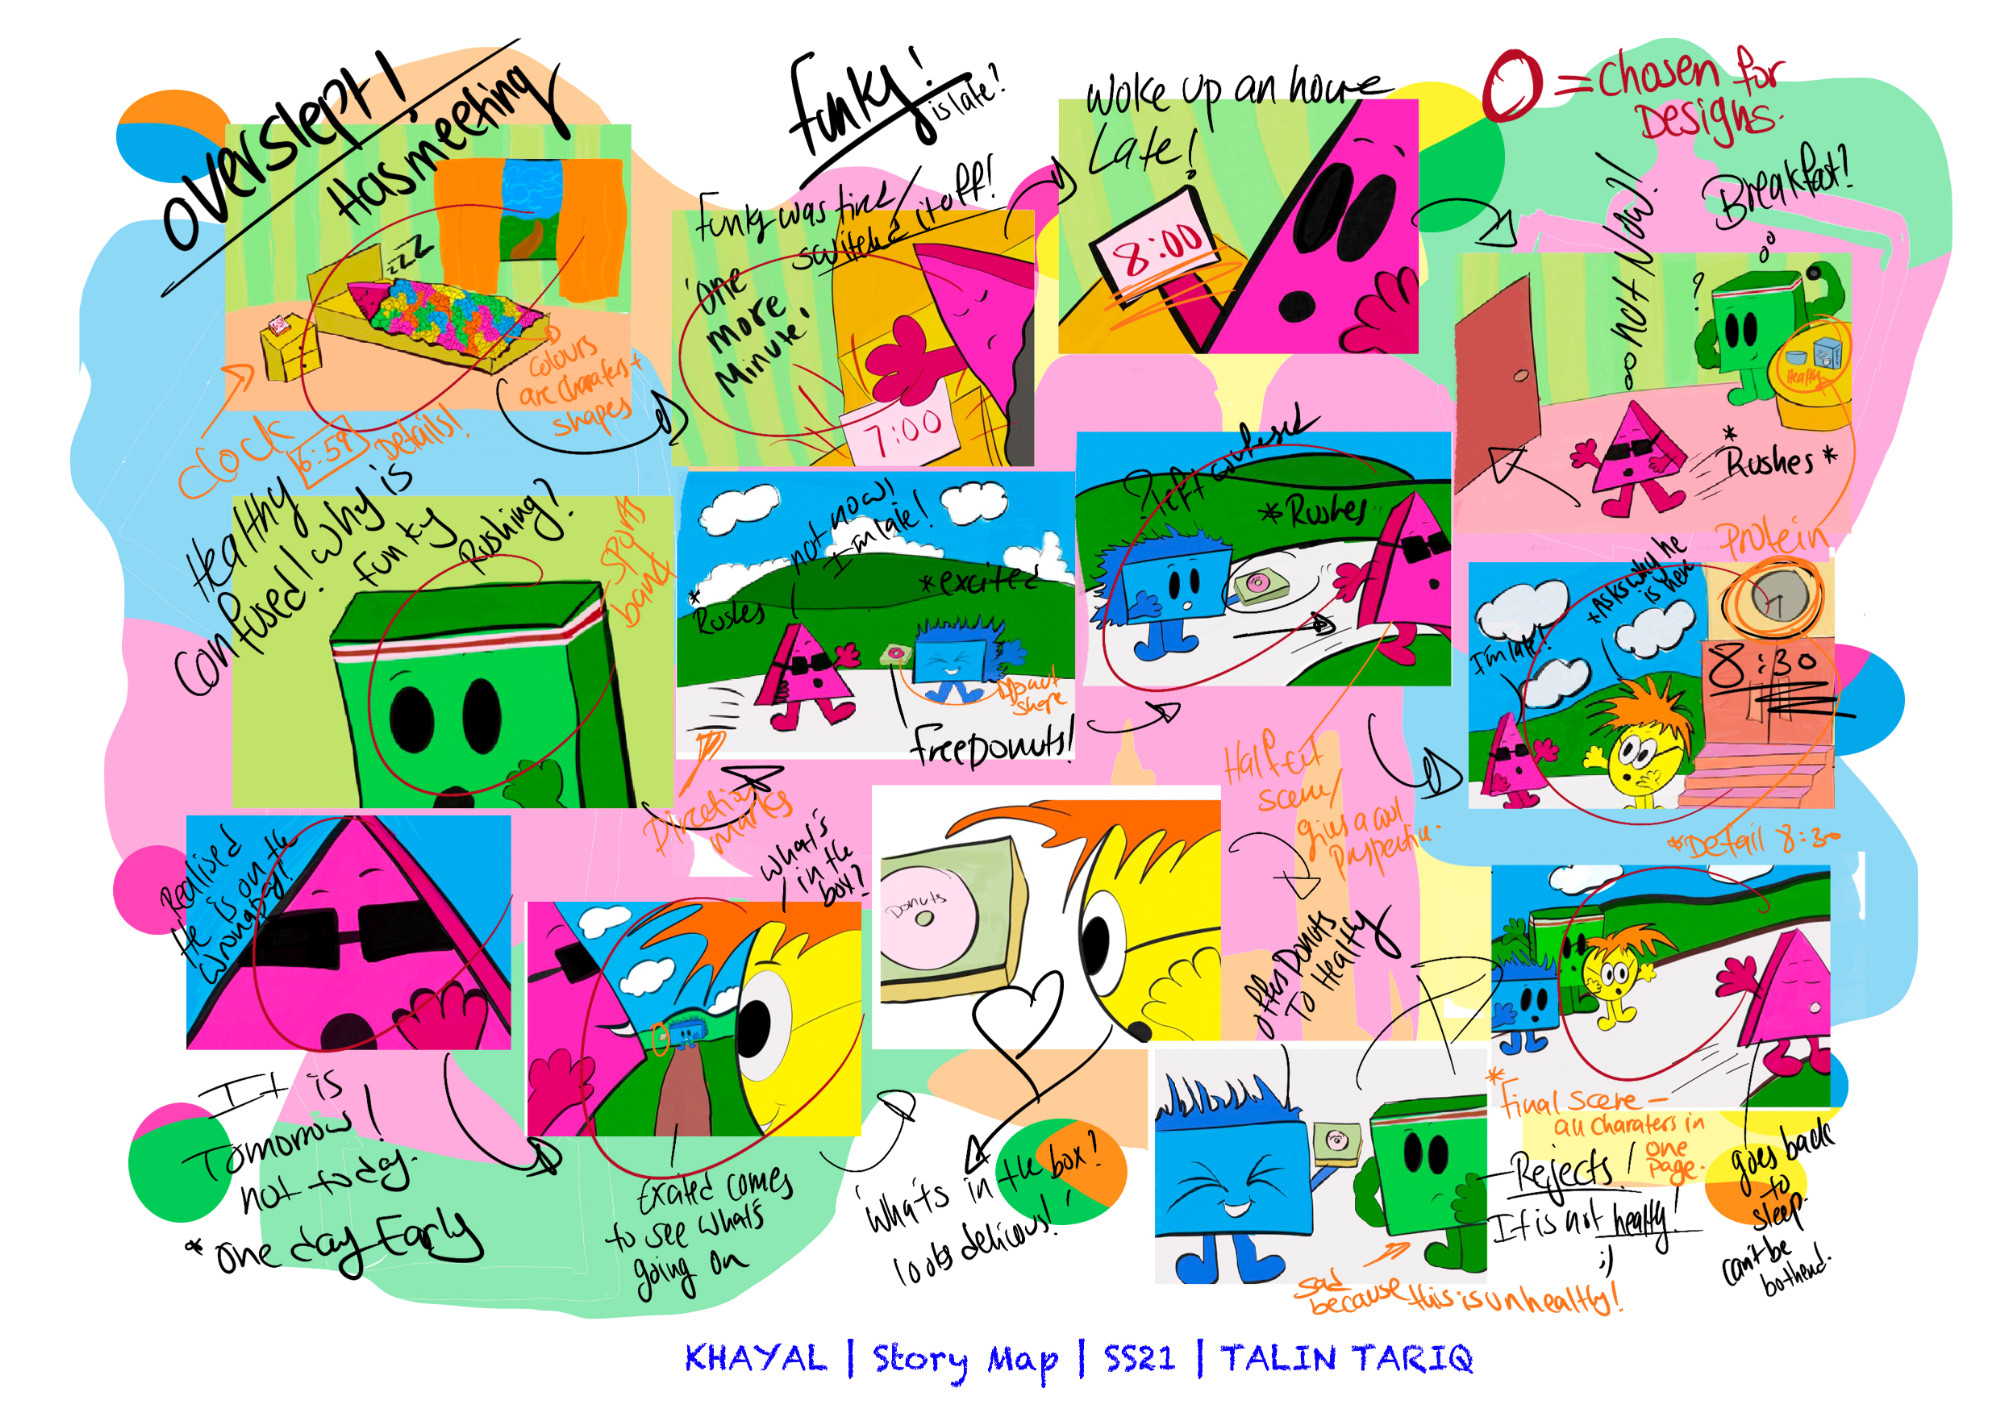 Story map, Talin Tariq